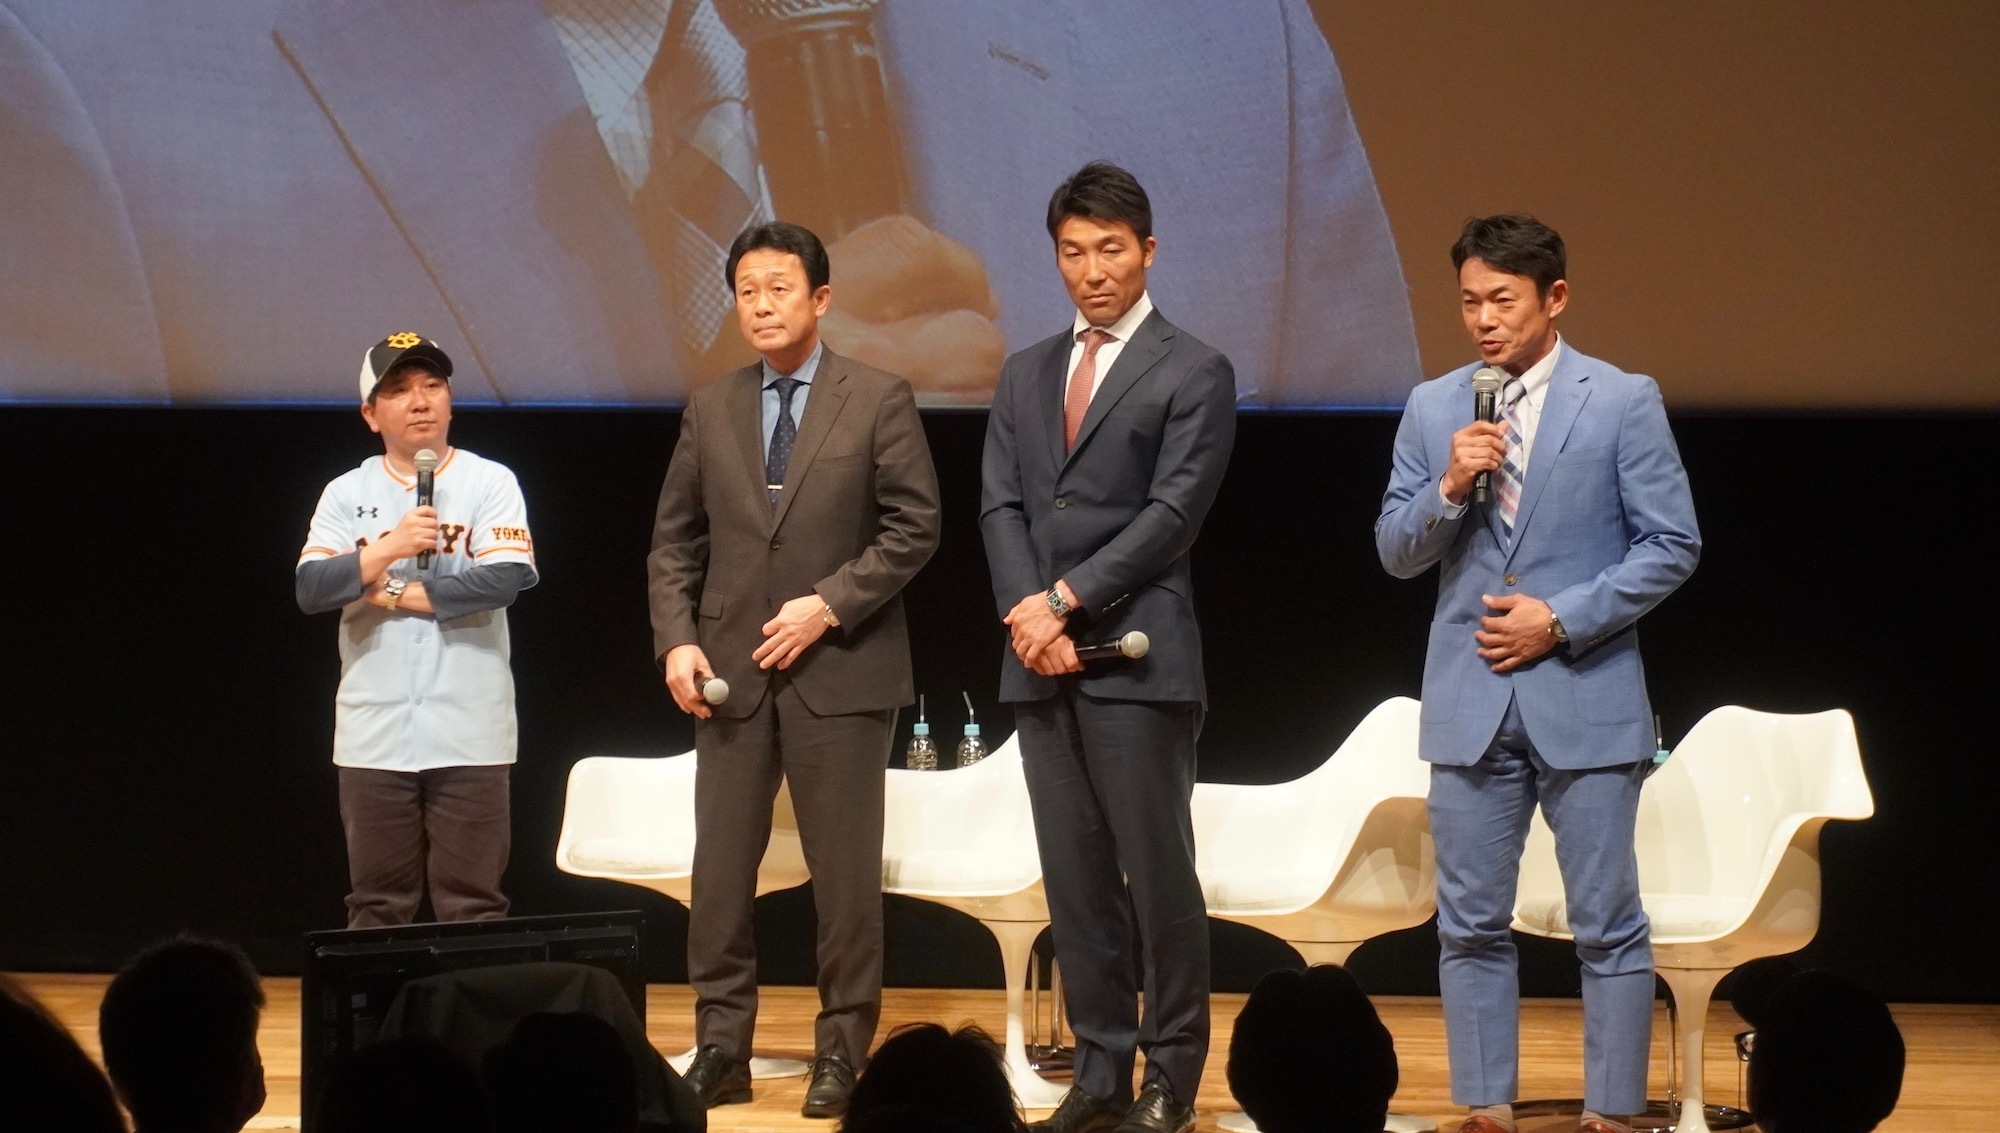 左から爆笑問題・田中裕二、ジャイアンツOBの川相昌弘氏、清水隆行氏、仁志敏久氏